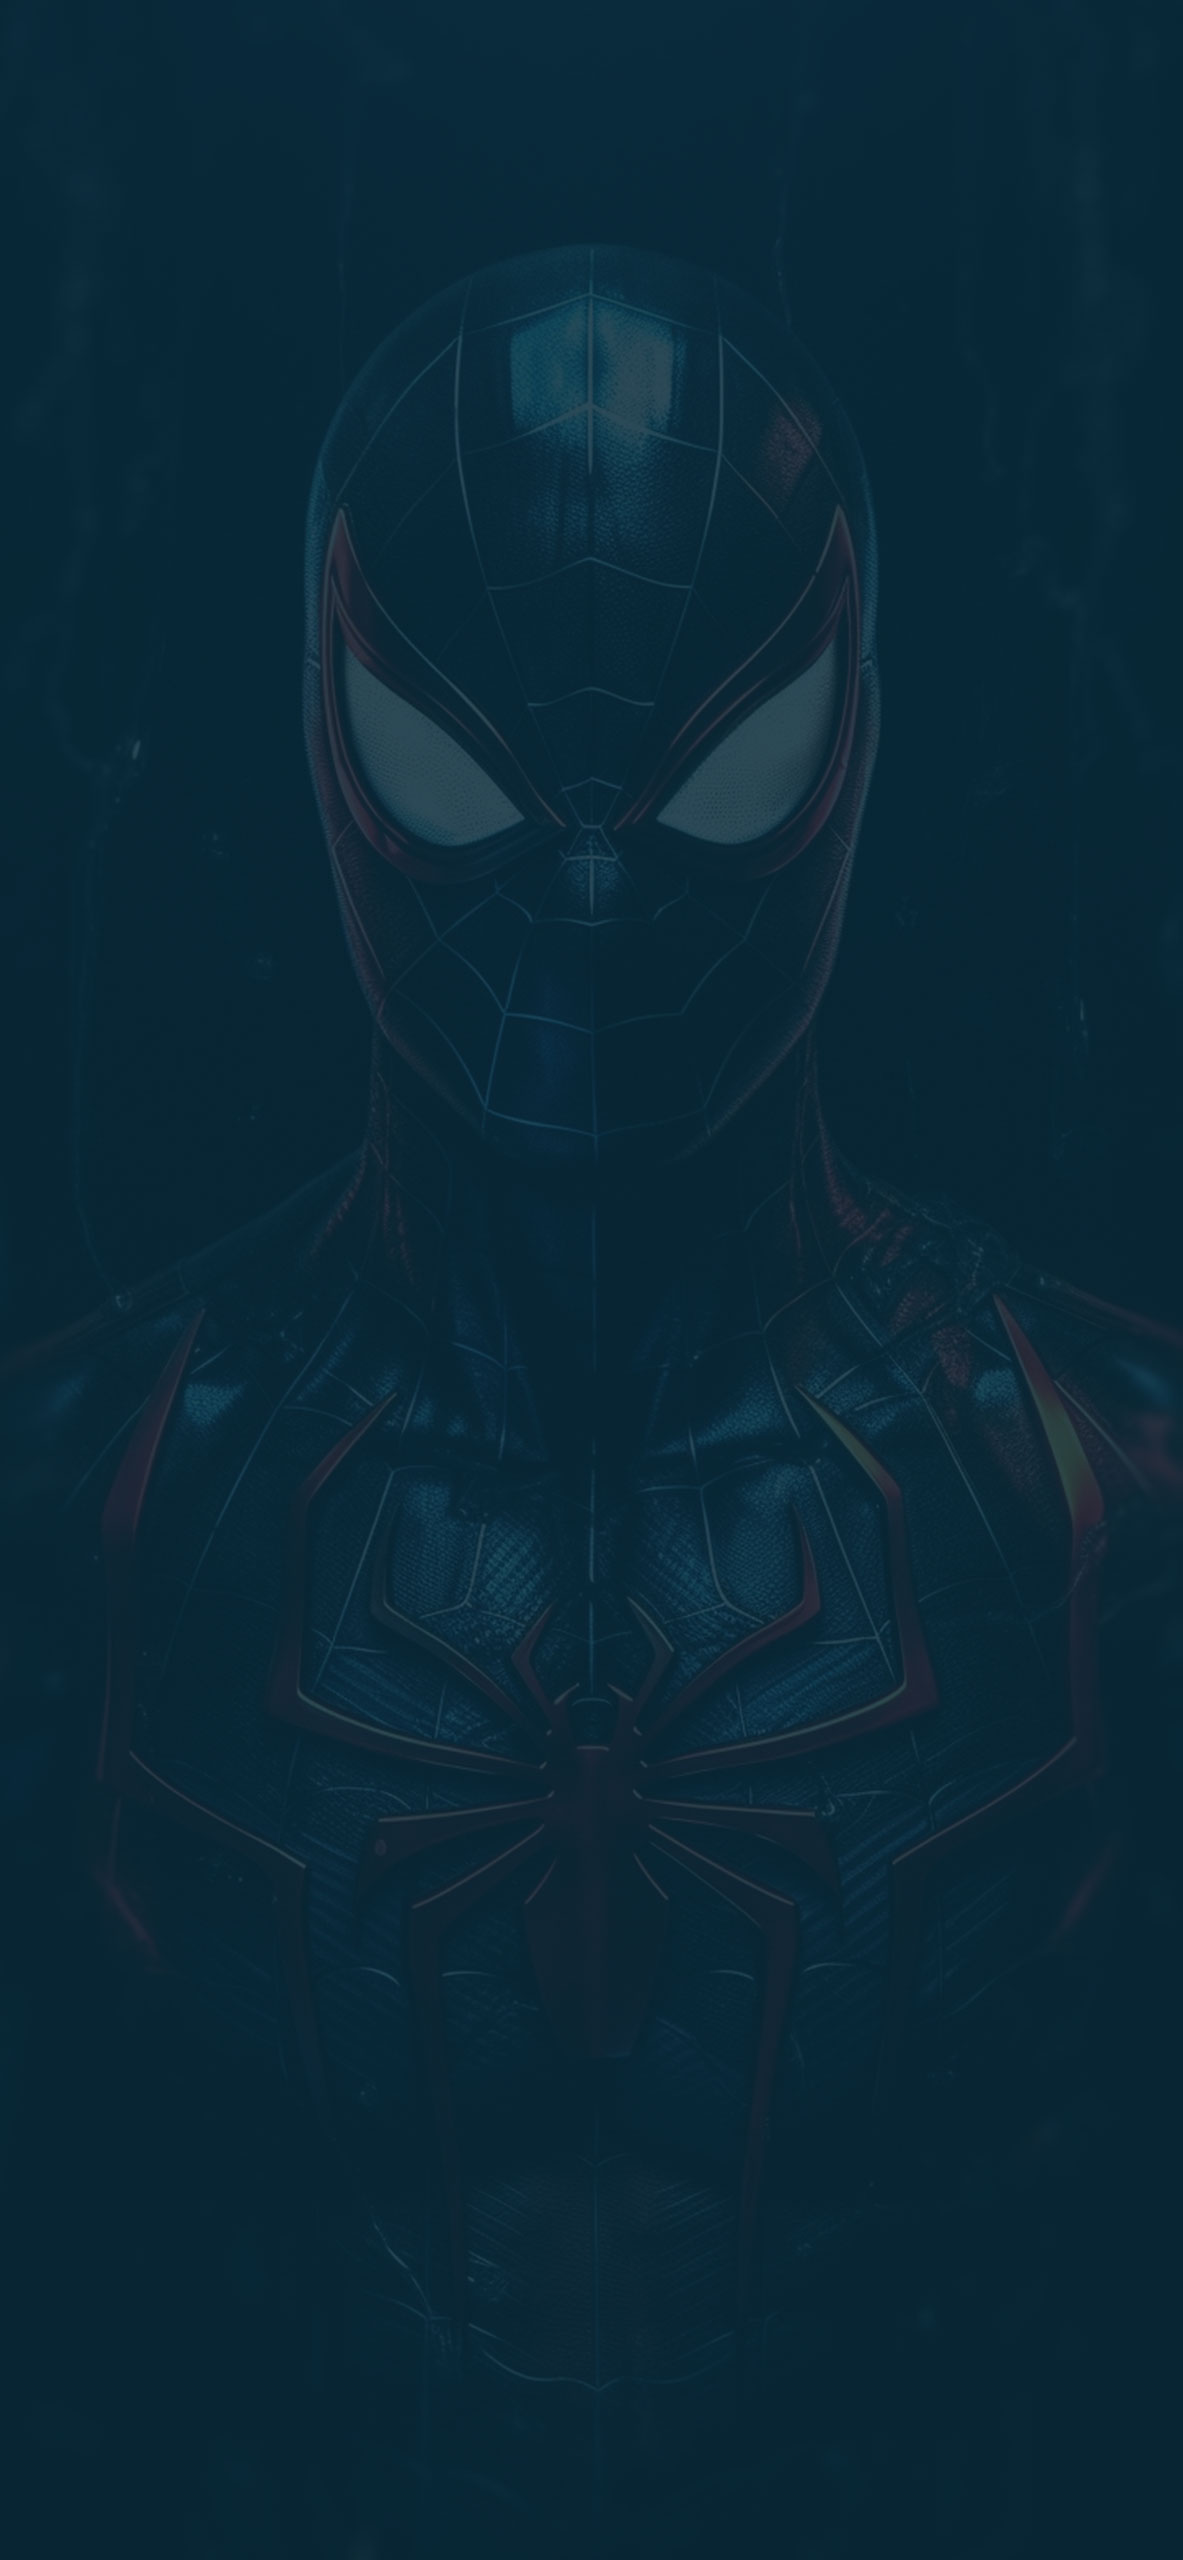 Spider Man Deep Dark Wallpaper Aesthetic 4k Marvel